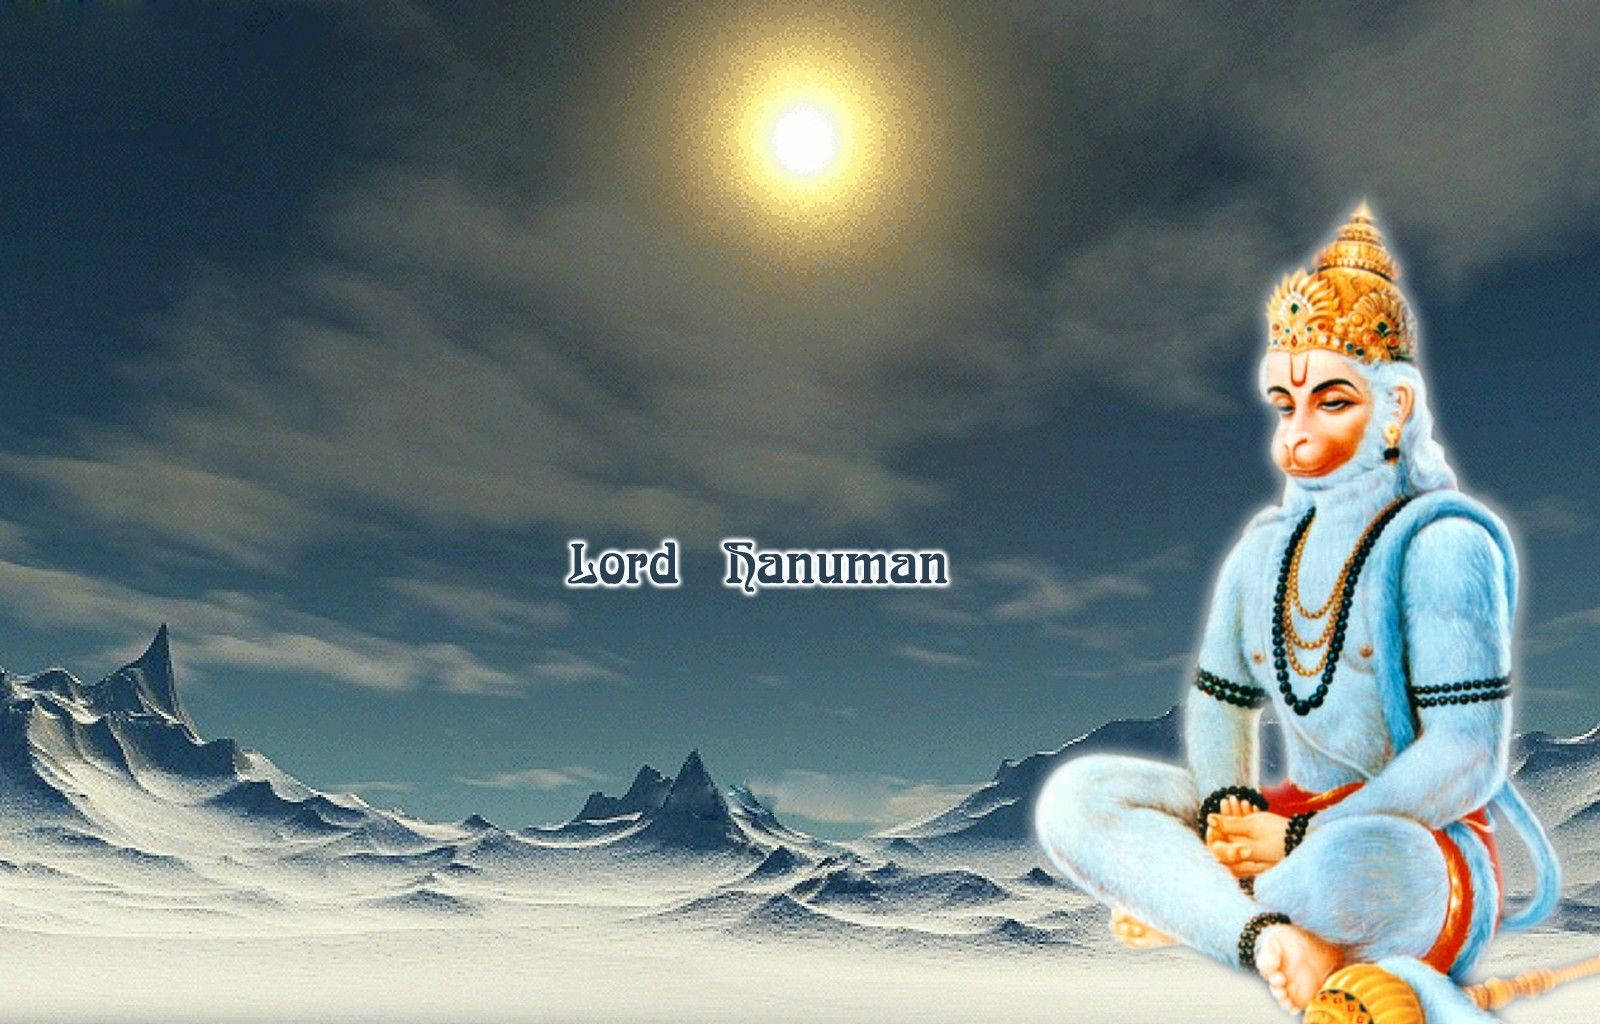 Hanuman On Snow Mountain 4k Hd Wallpaper